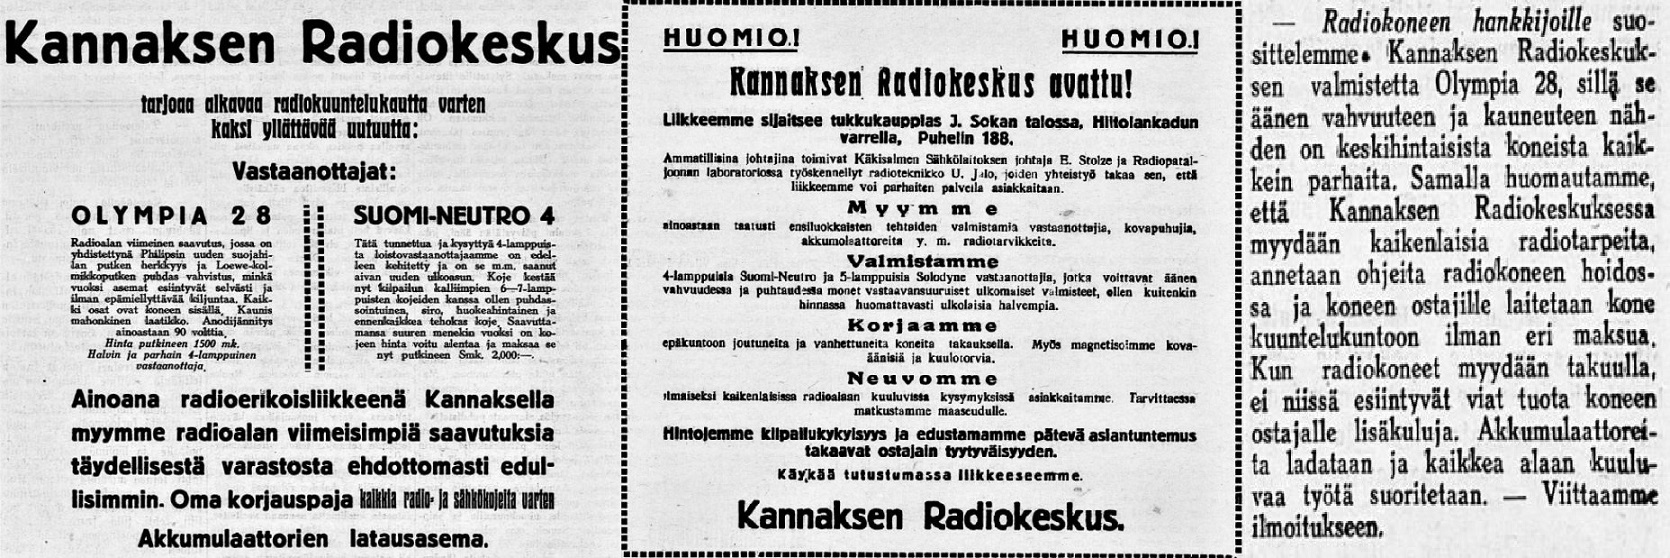 Kannaksen_Radiokeskus_Kdkisalmen_Sanomat_no_97_1928__no_22_1928__no_121_1928.jpg